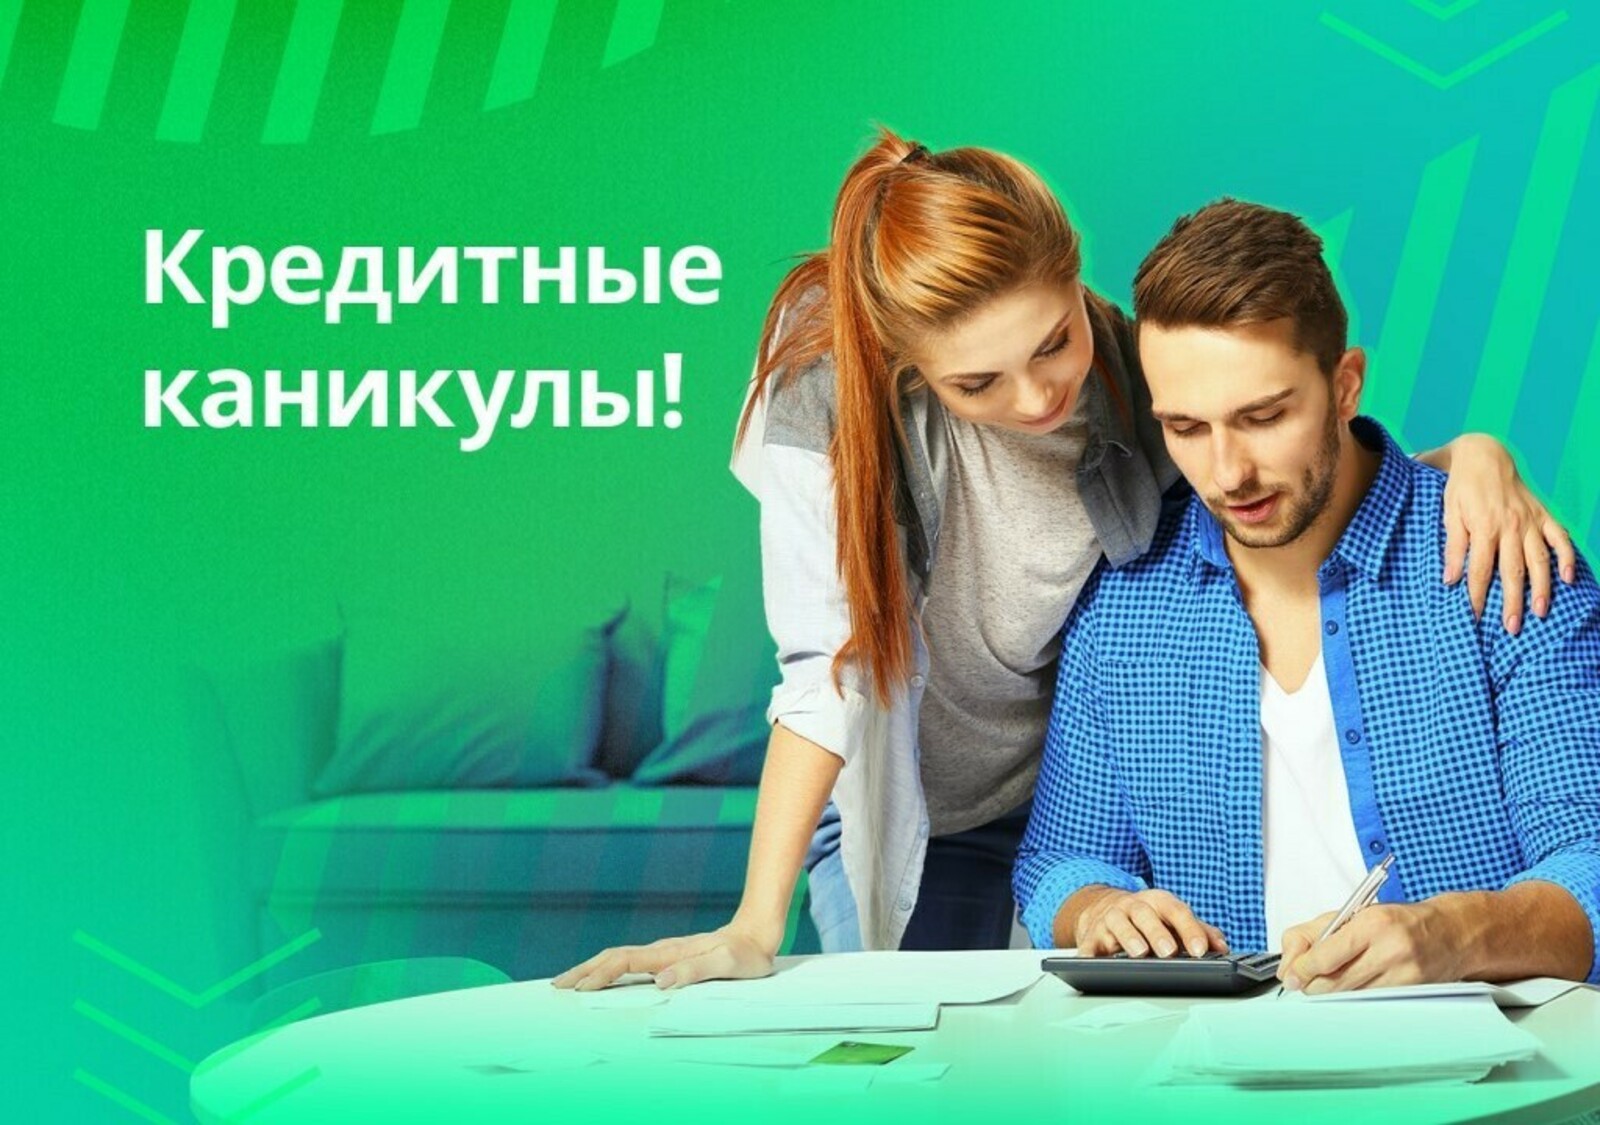 Предприниматели в Башкортостане с 4 марта 2022 года могут получить кредитные каникулы